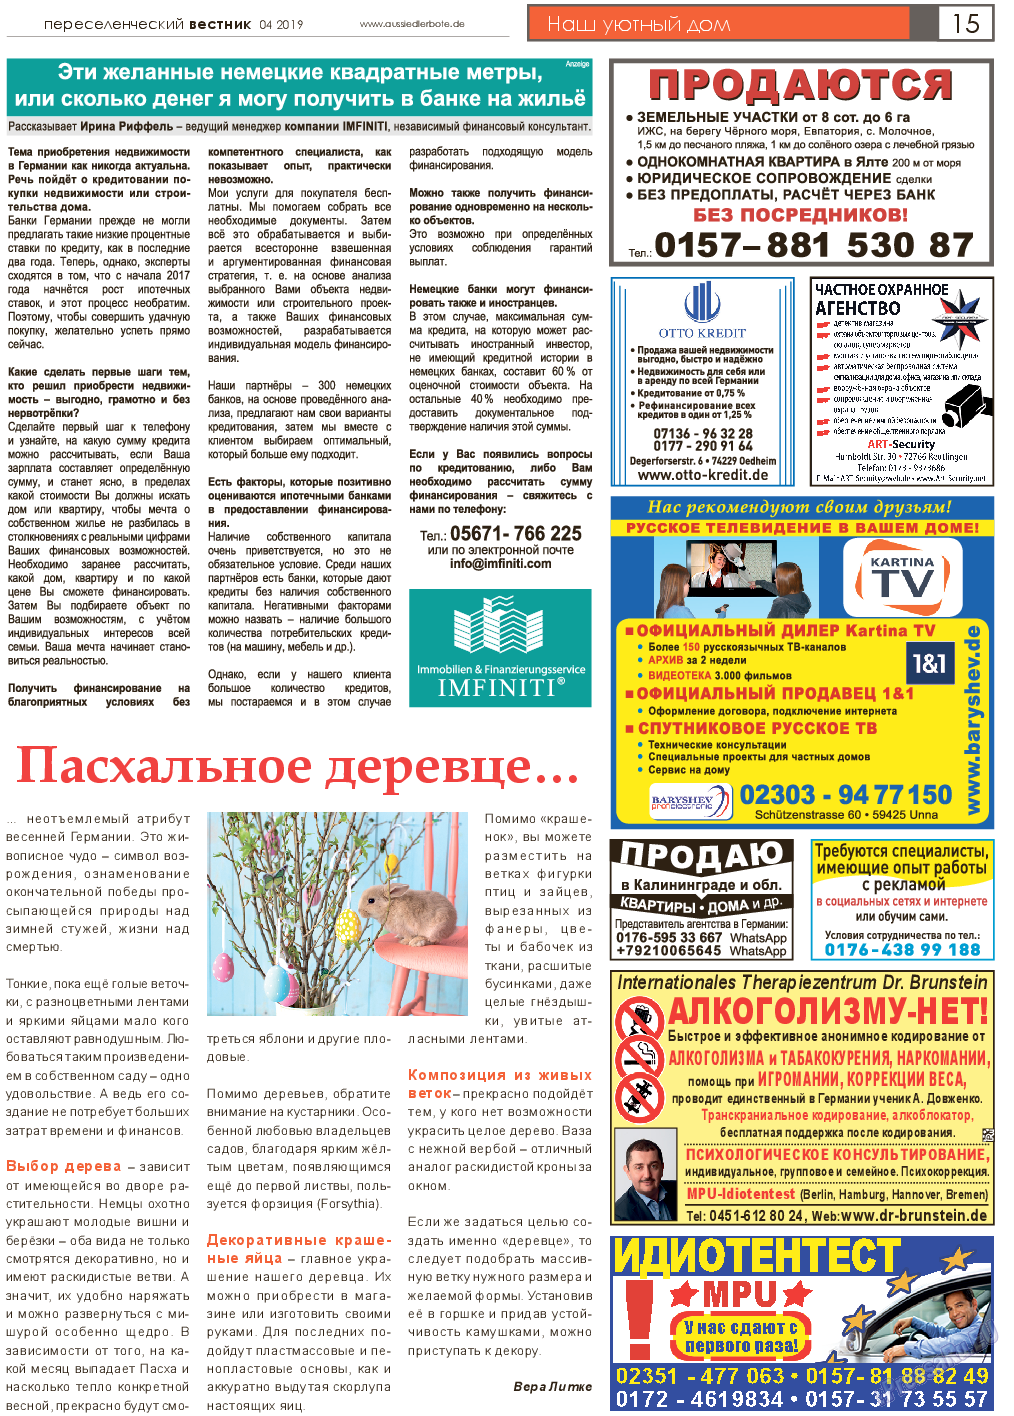 Переселенческий вестник (газета). 2019 год, номер 4, стр. 15